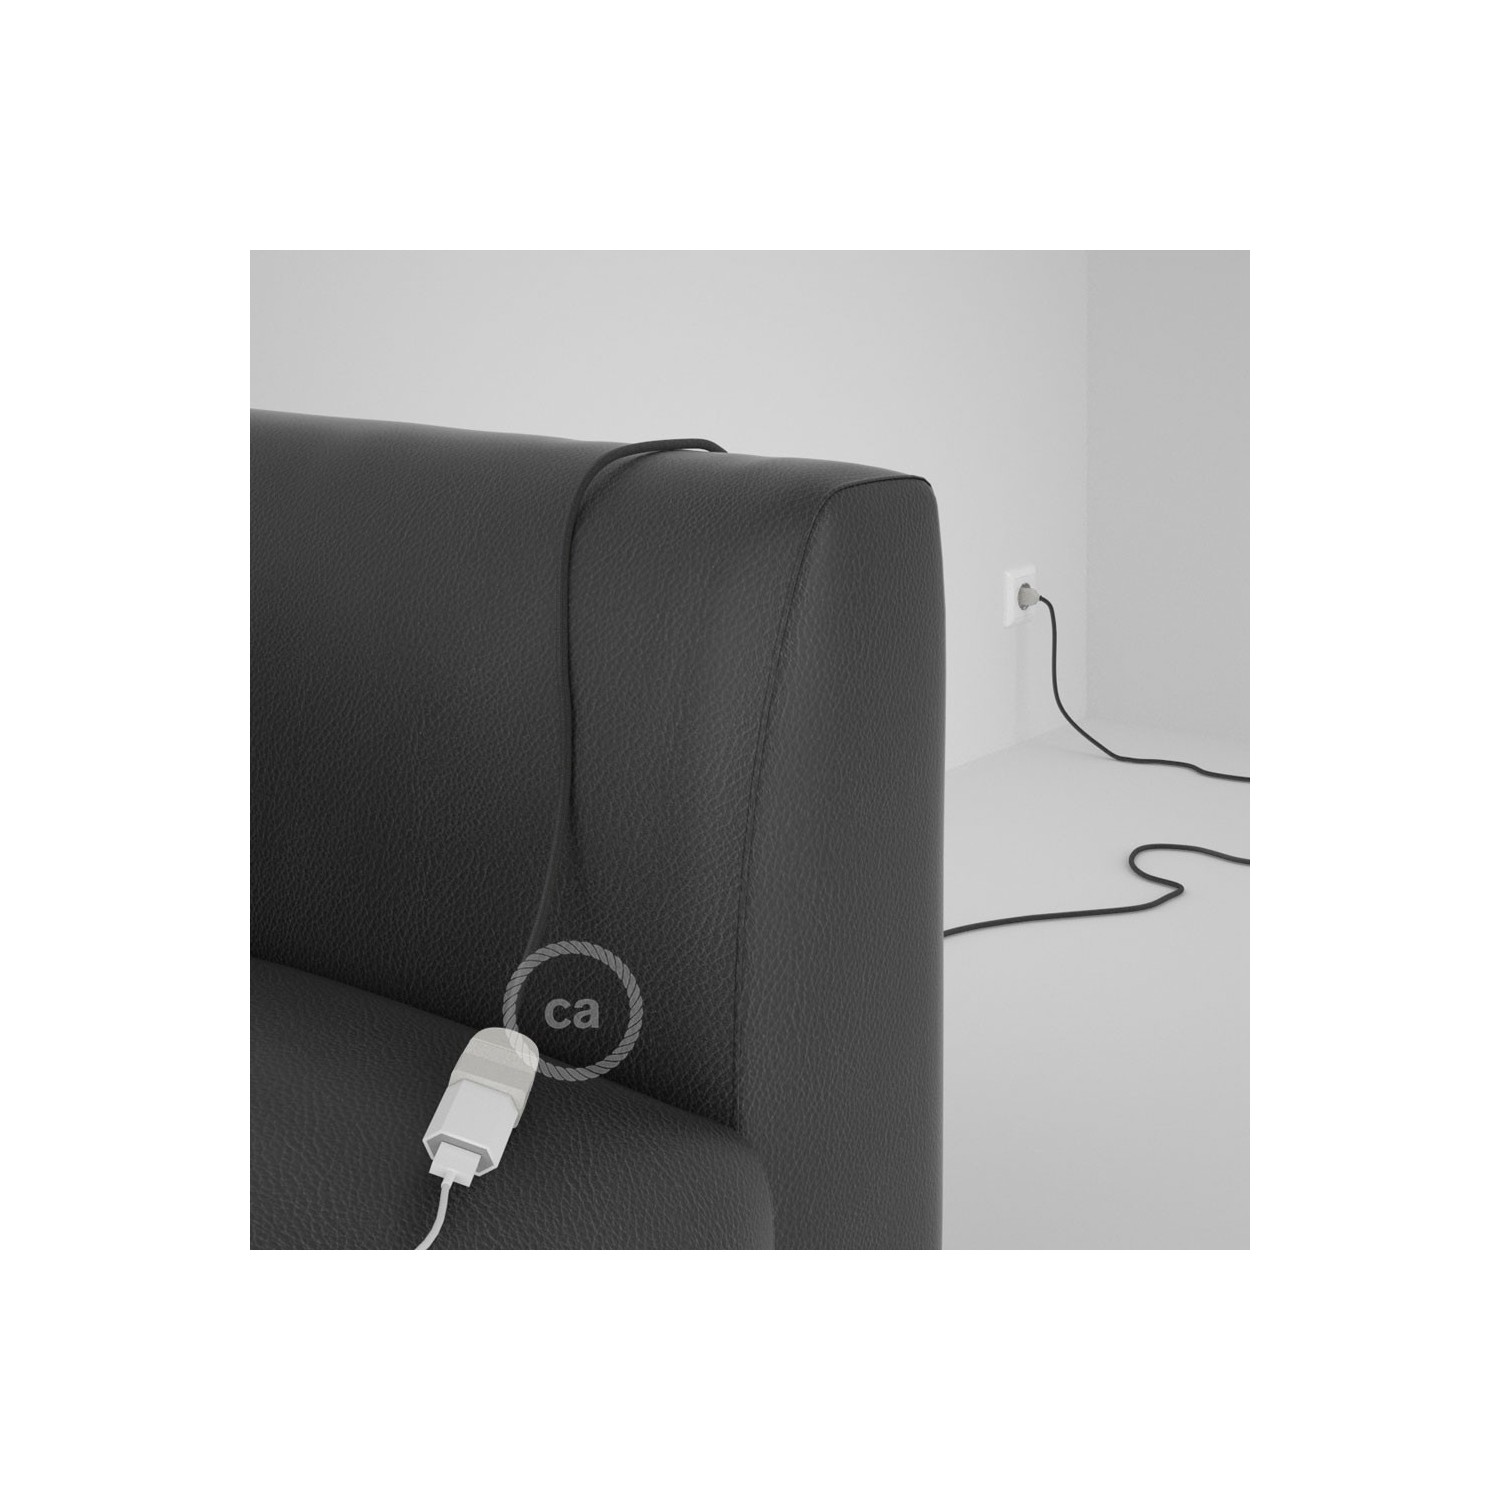 Rallonge électrique avec câble textile RM26 Effet Soie Gris Foncé 2P 10A Made in Italy.